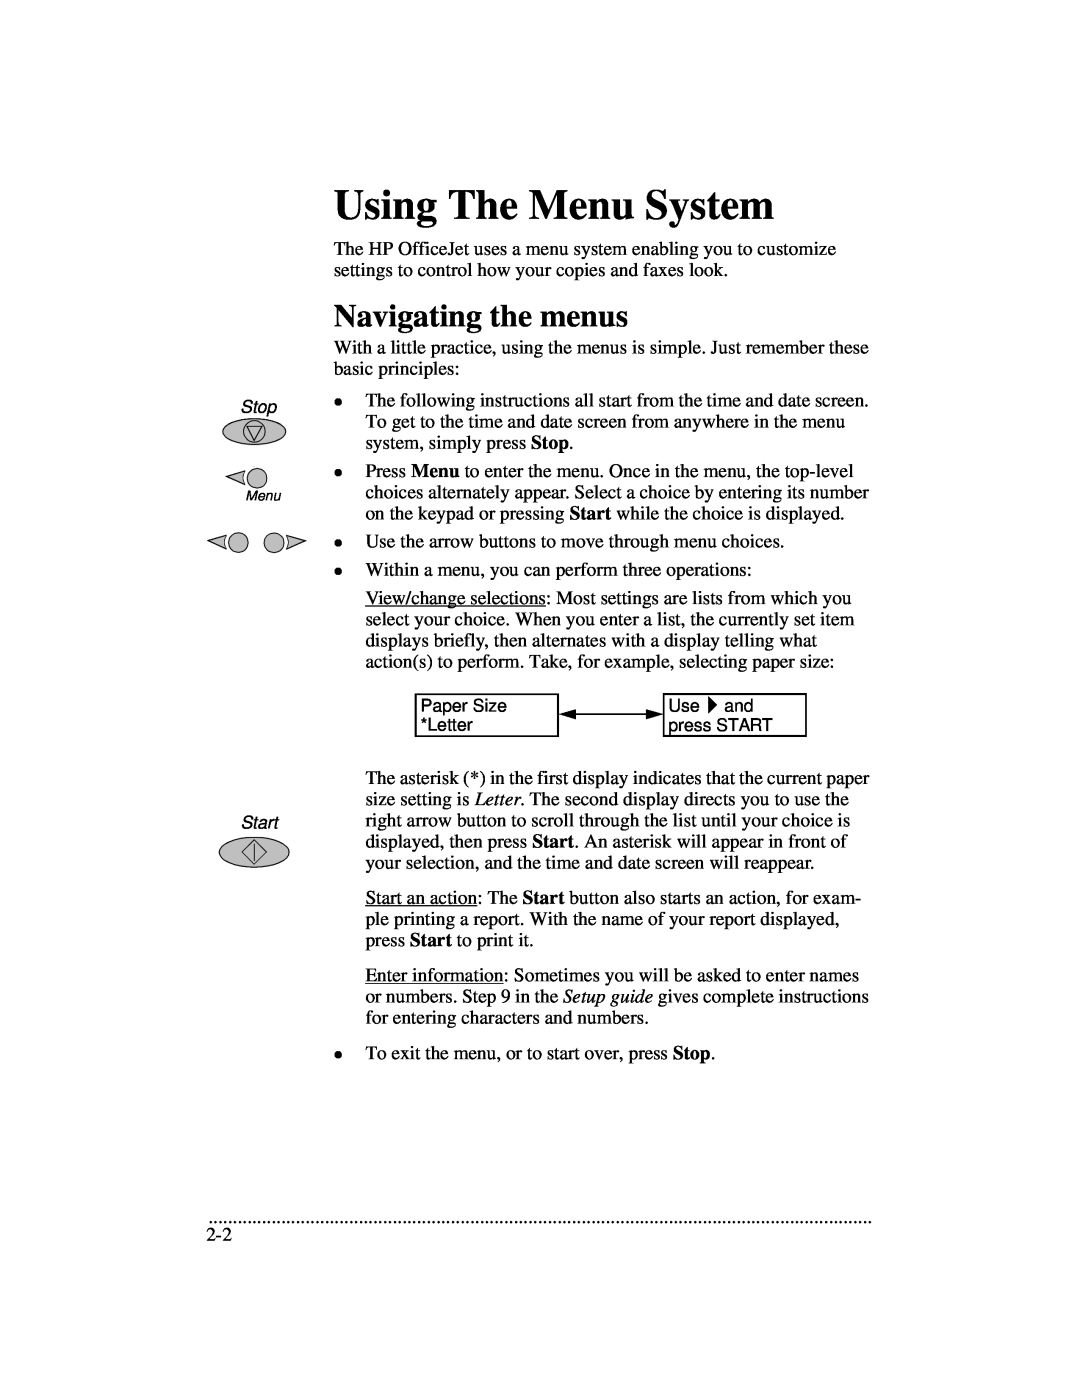 HP 700 manual Using The Menu System, Navigating the menus 